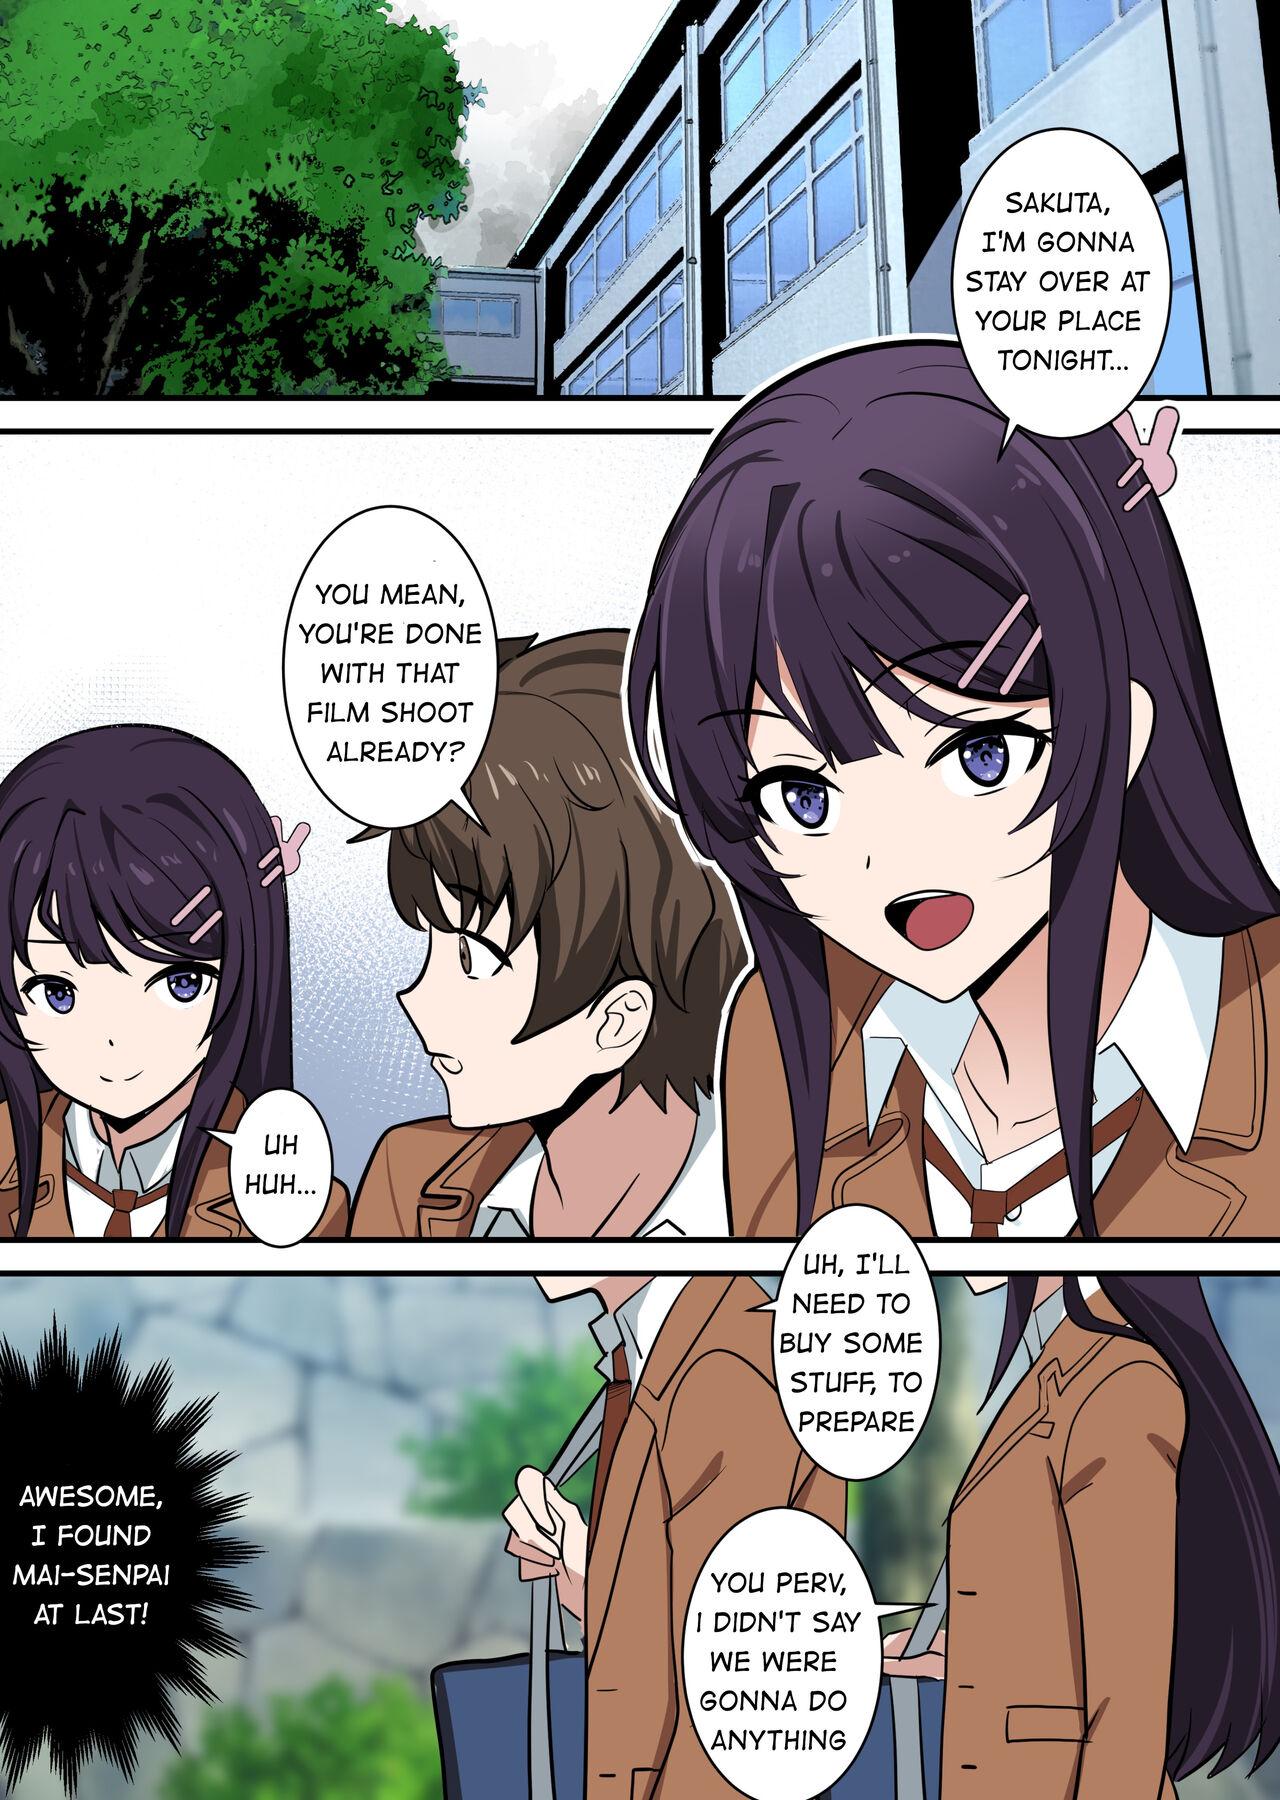 Fucking Possessing Sakurajima Mai and Cucking Her Lover - Seishun buta yarou wa bunny girl senpai no yume o minai Fishnet - Page 1